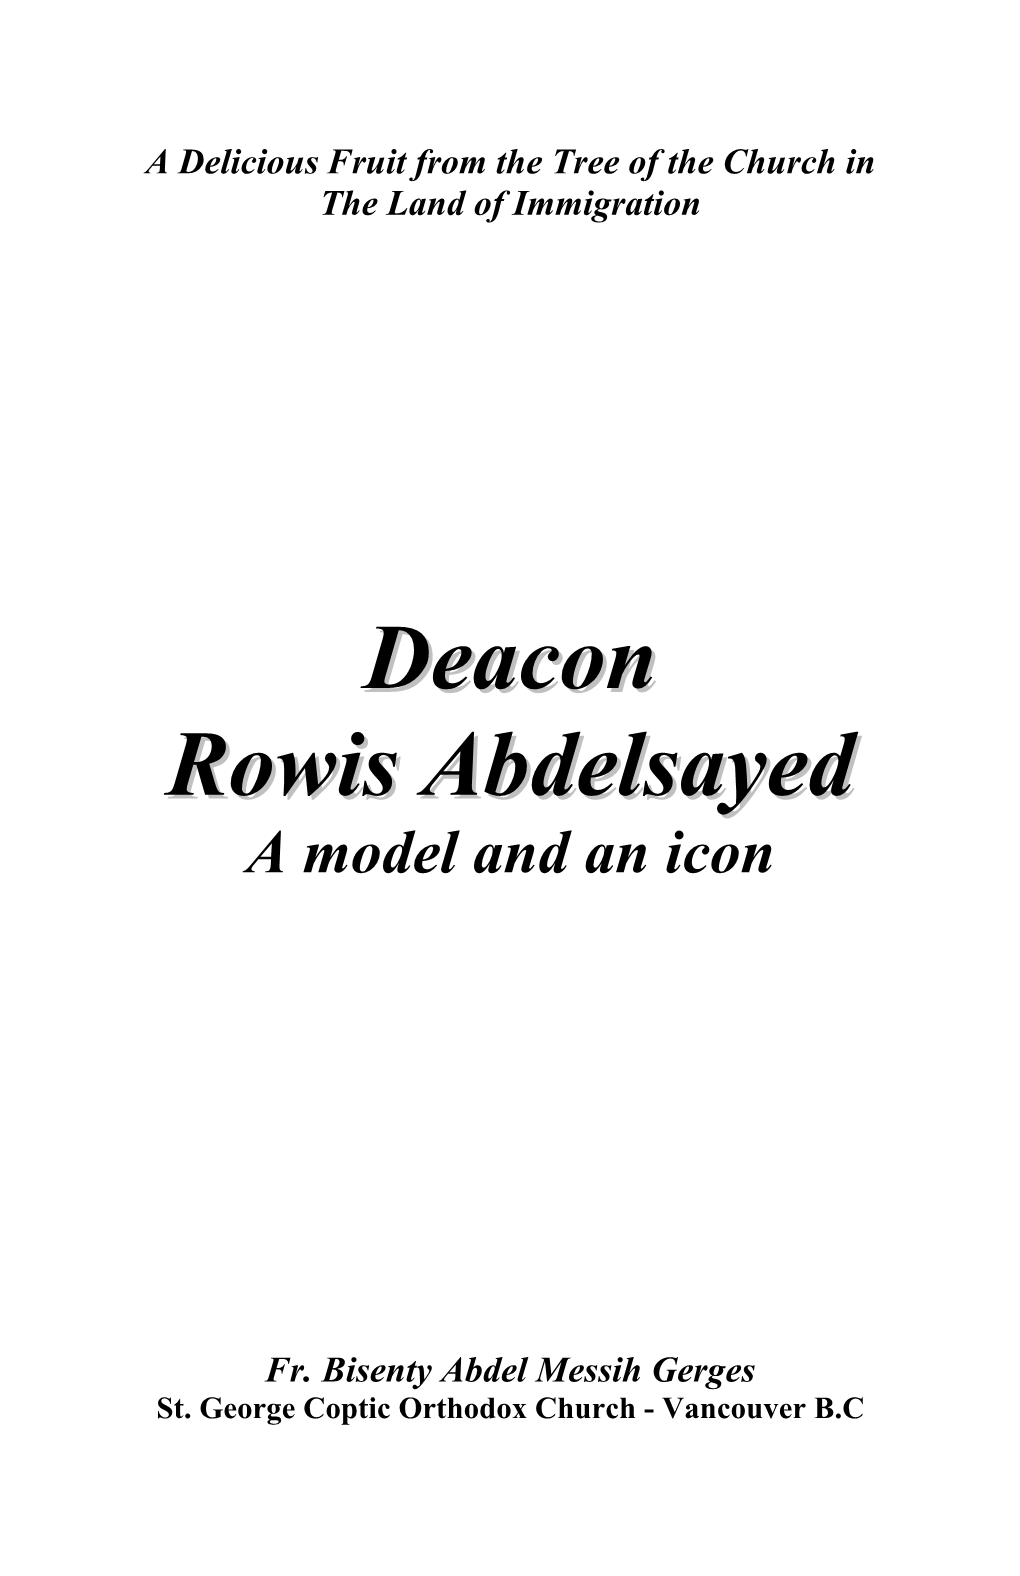 Deacon Rowis Abdelsayed